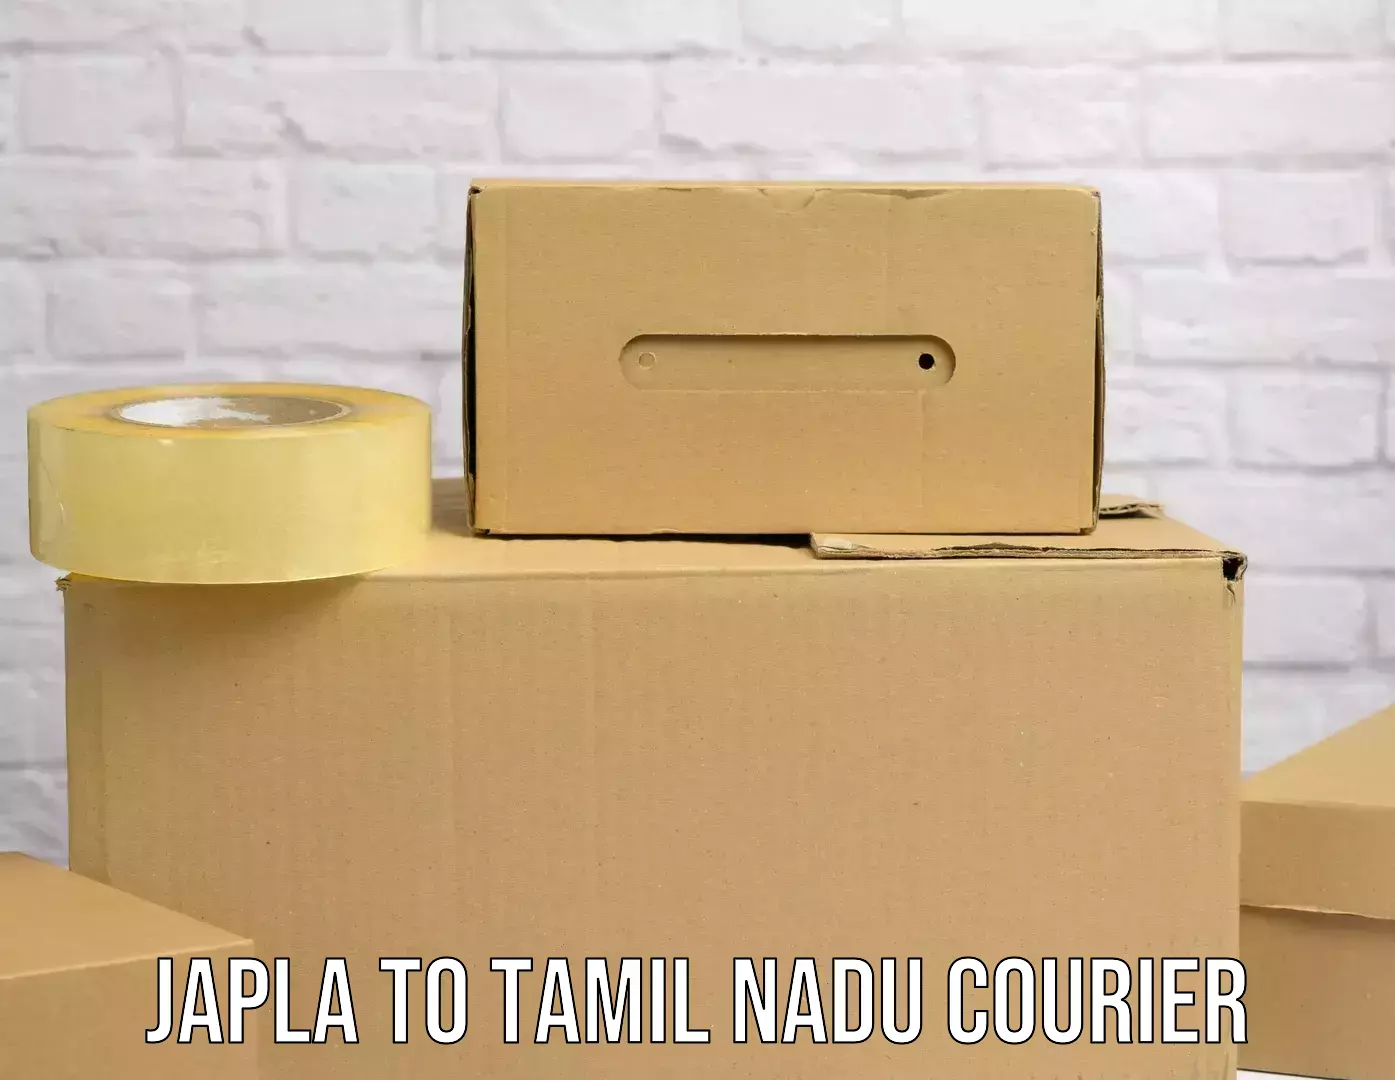 Express postal services Japla to Tamil Nadu